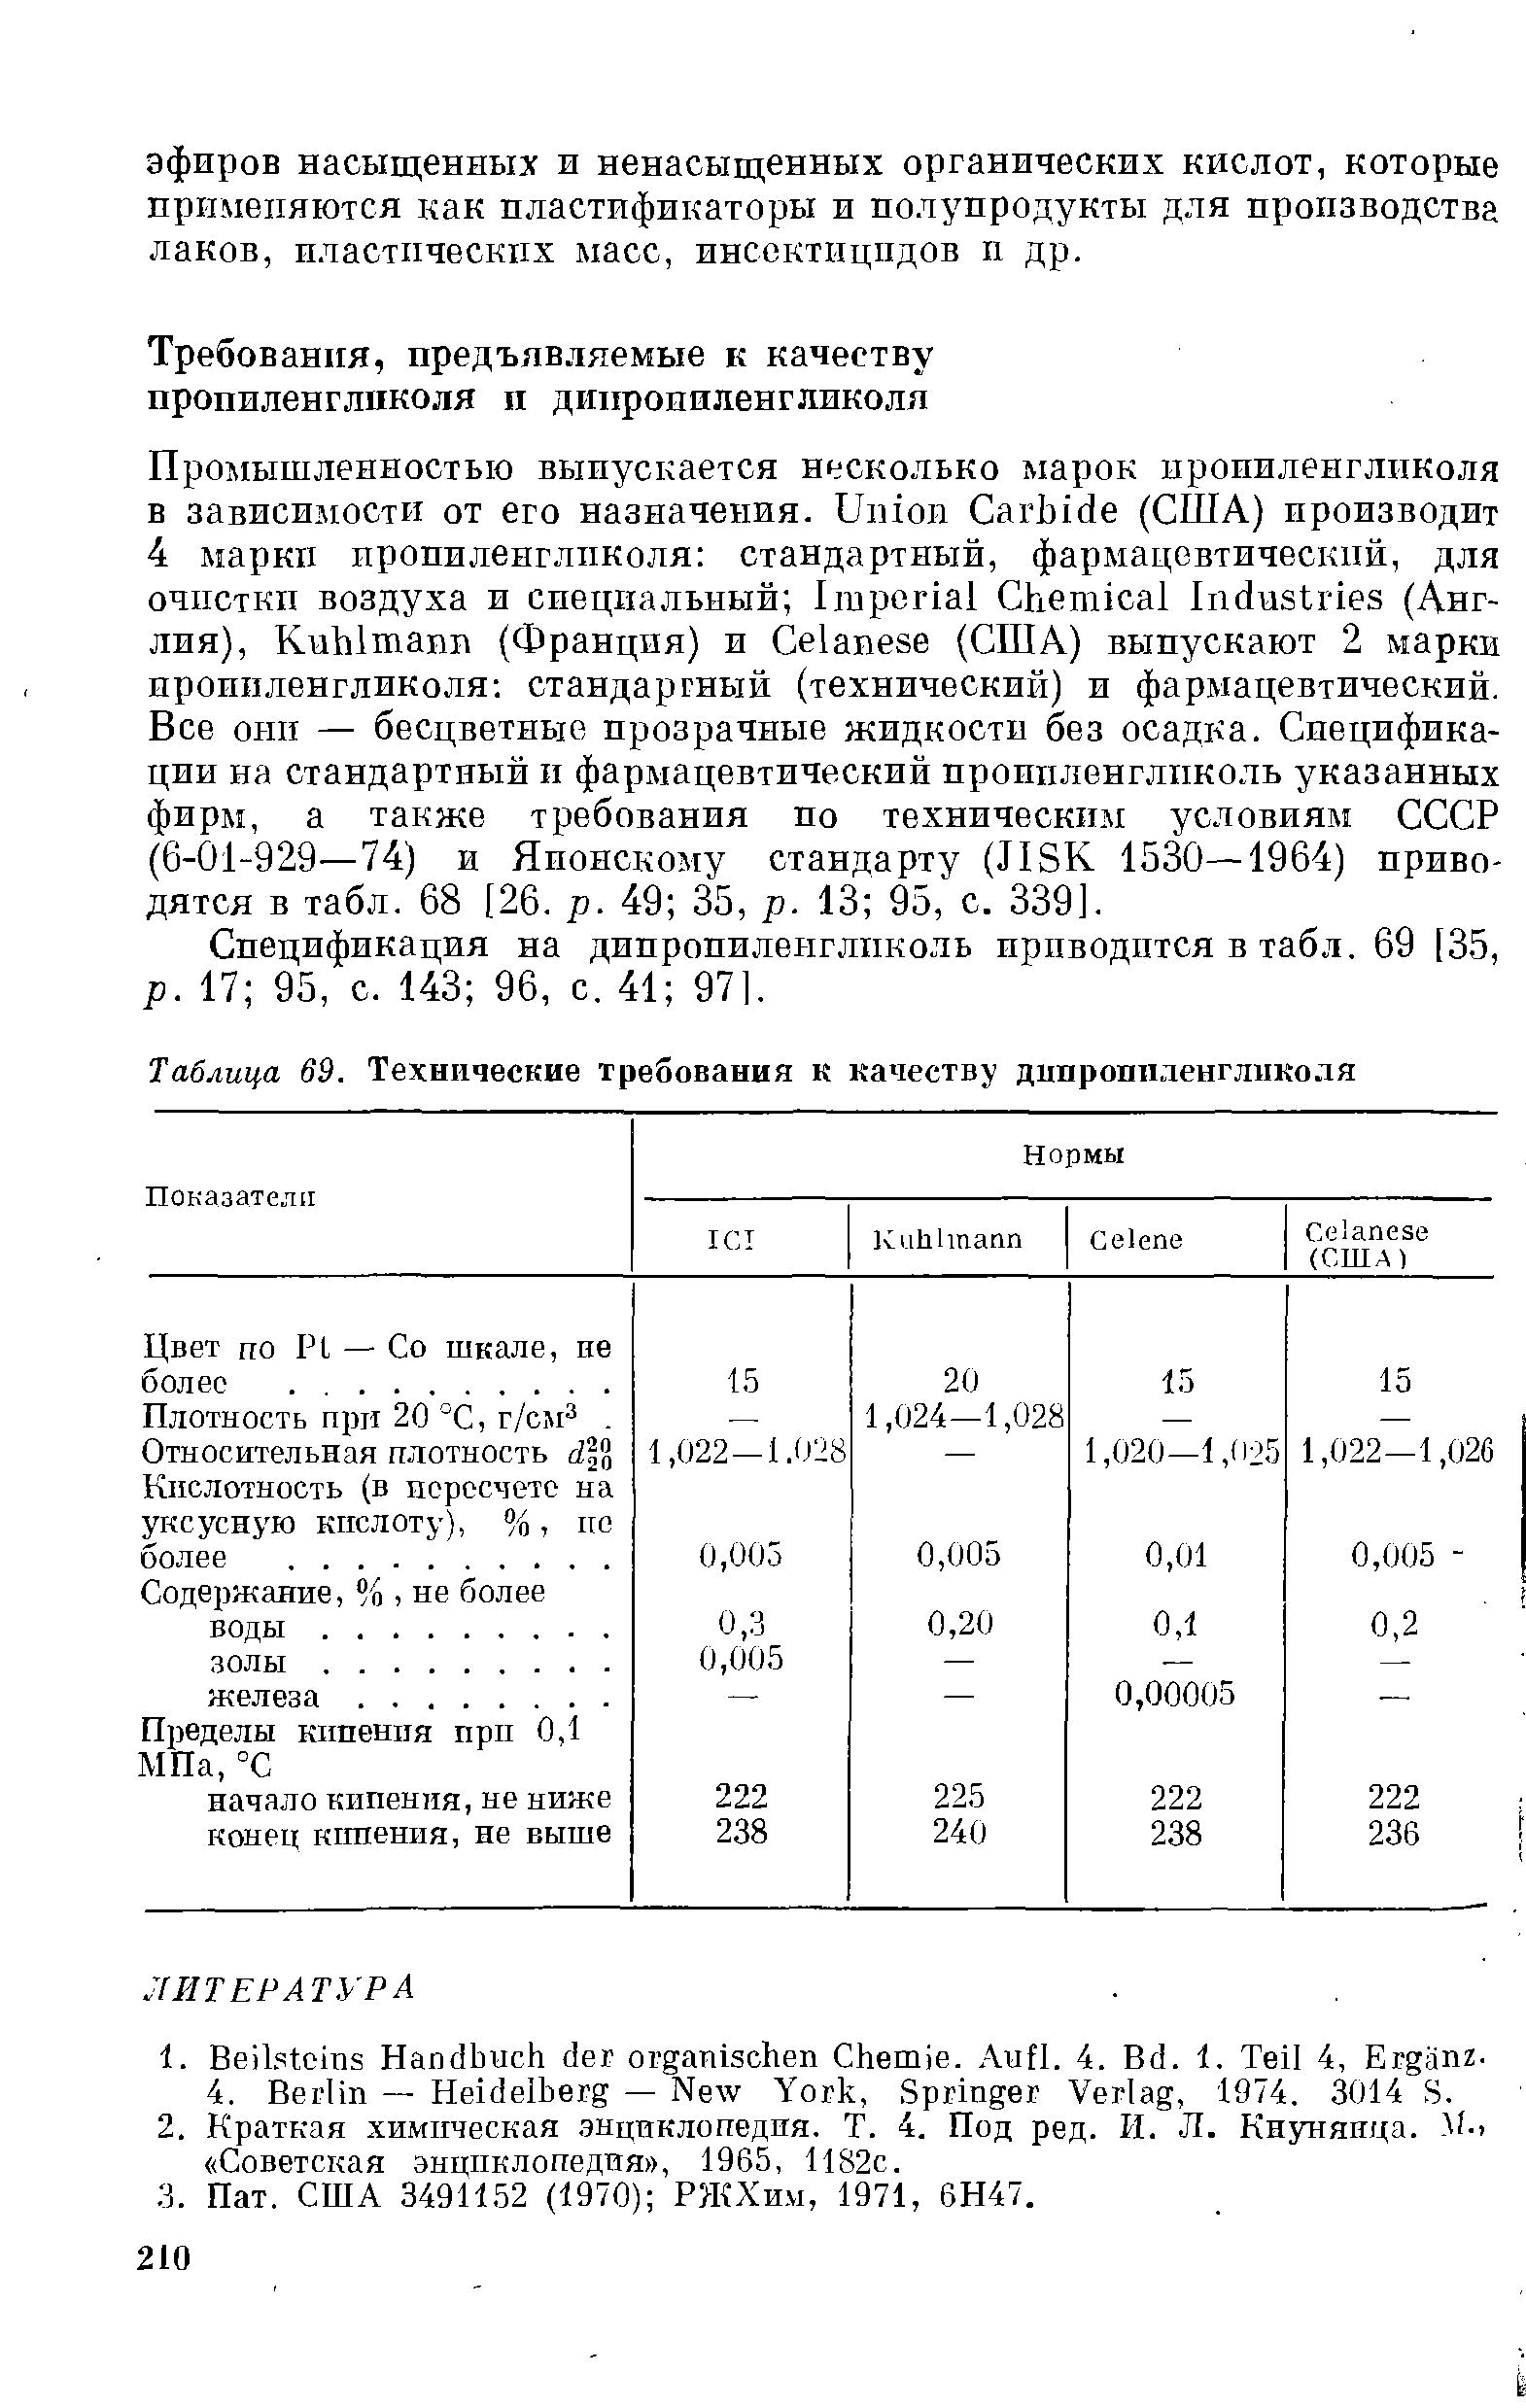 Спецификация на дипропиленгликоль приводится в табл. 69 [35, р. 17 95, с. 143 96, с. 41 97[.